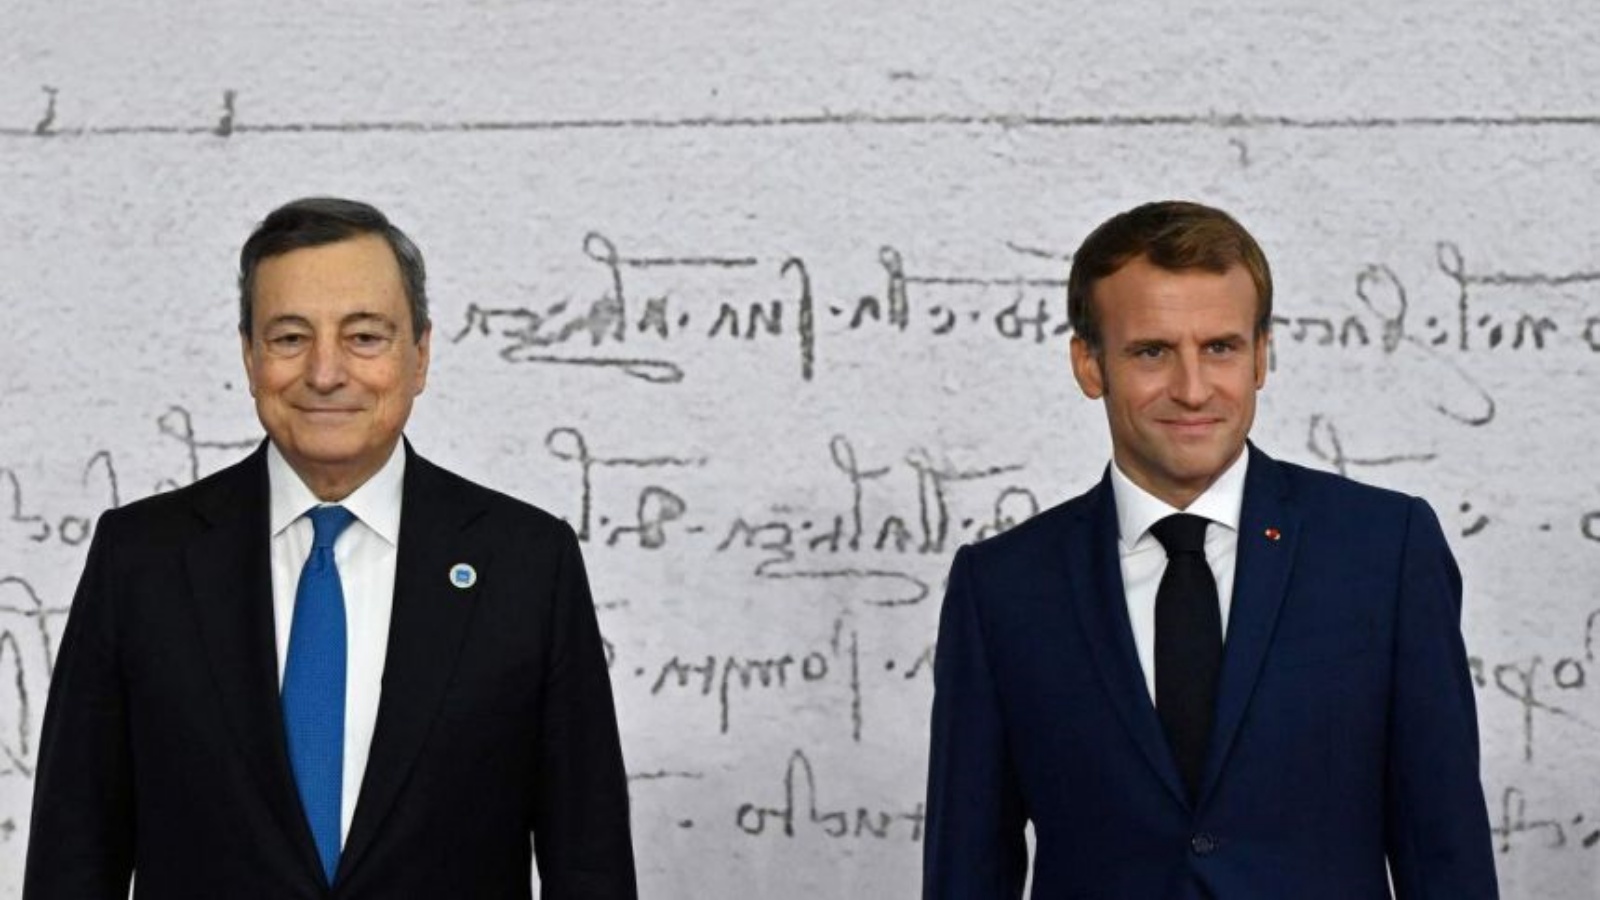 رئيس الوزراء الإيطالي ماريو دراغي (إلى اليسار) والرئيس الفرنسي إيمانويل ماكرون